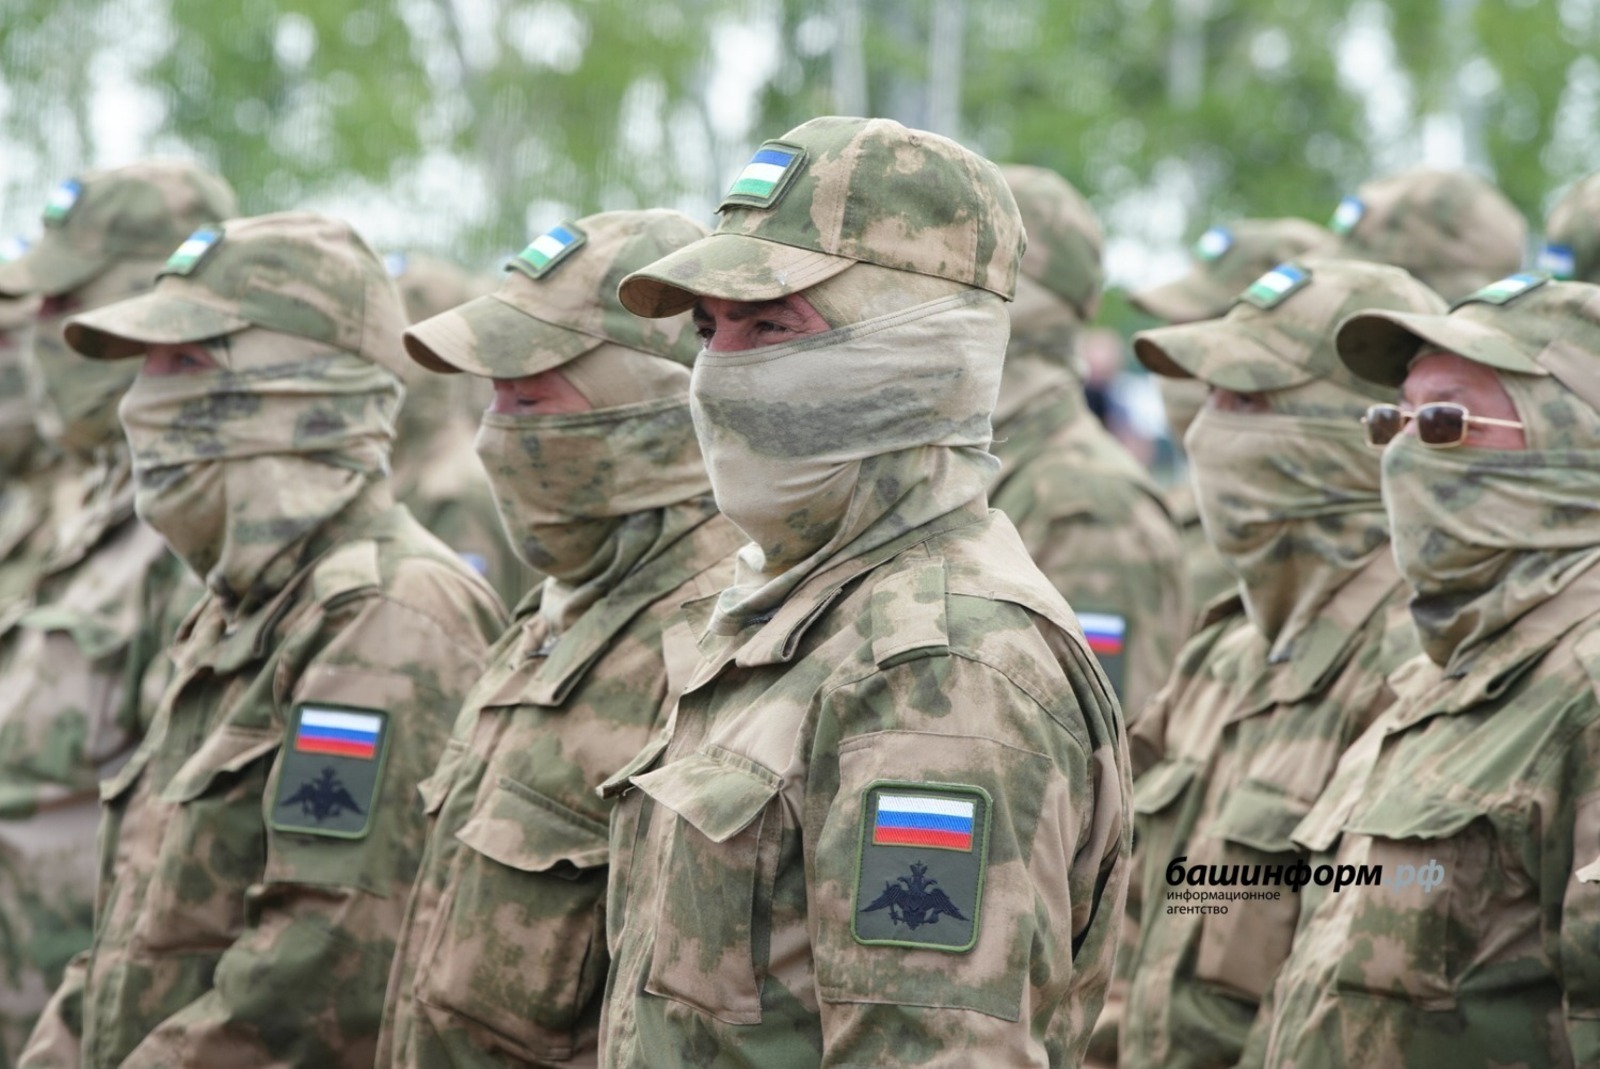 Жители Башкирии считают достойным ответ Радия Хабирова  министру обороны из Украины